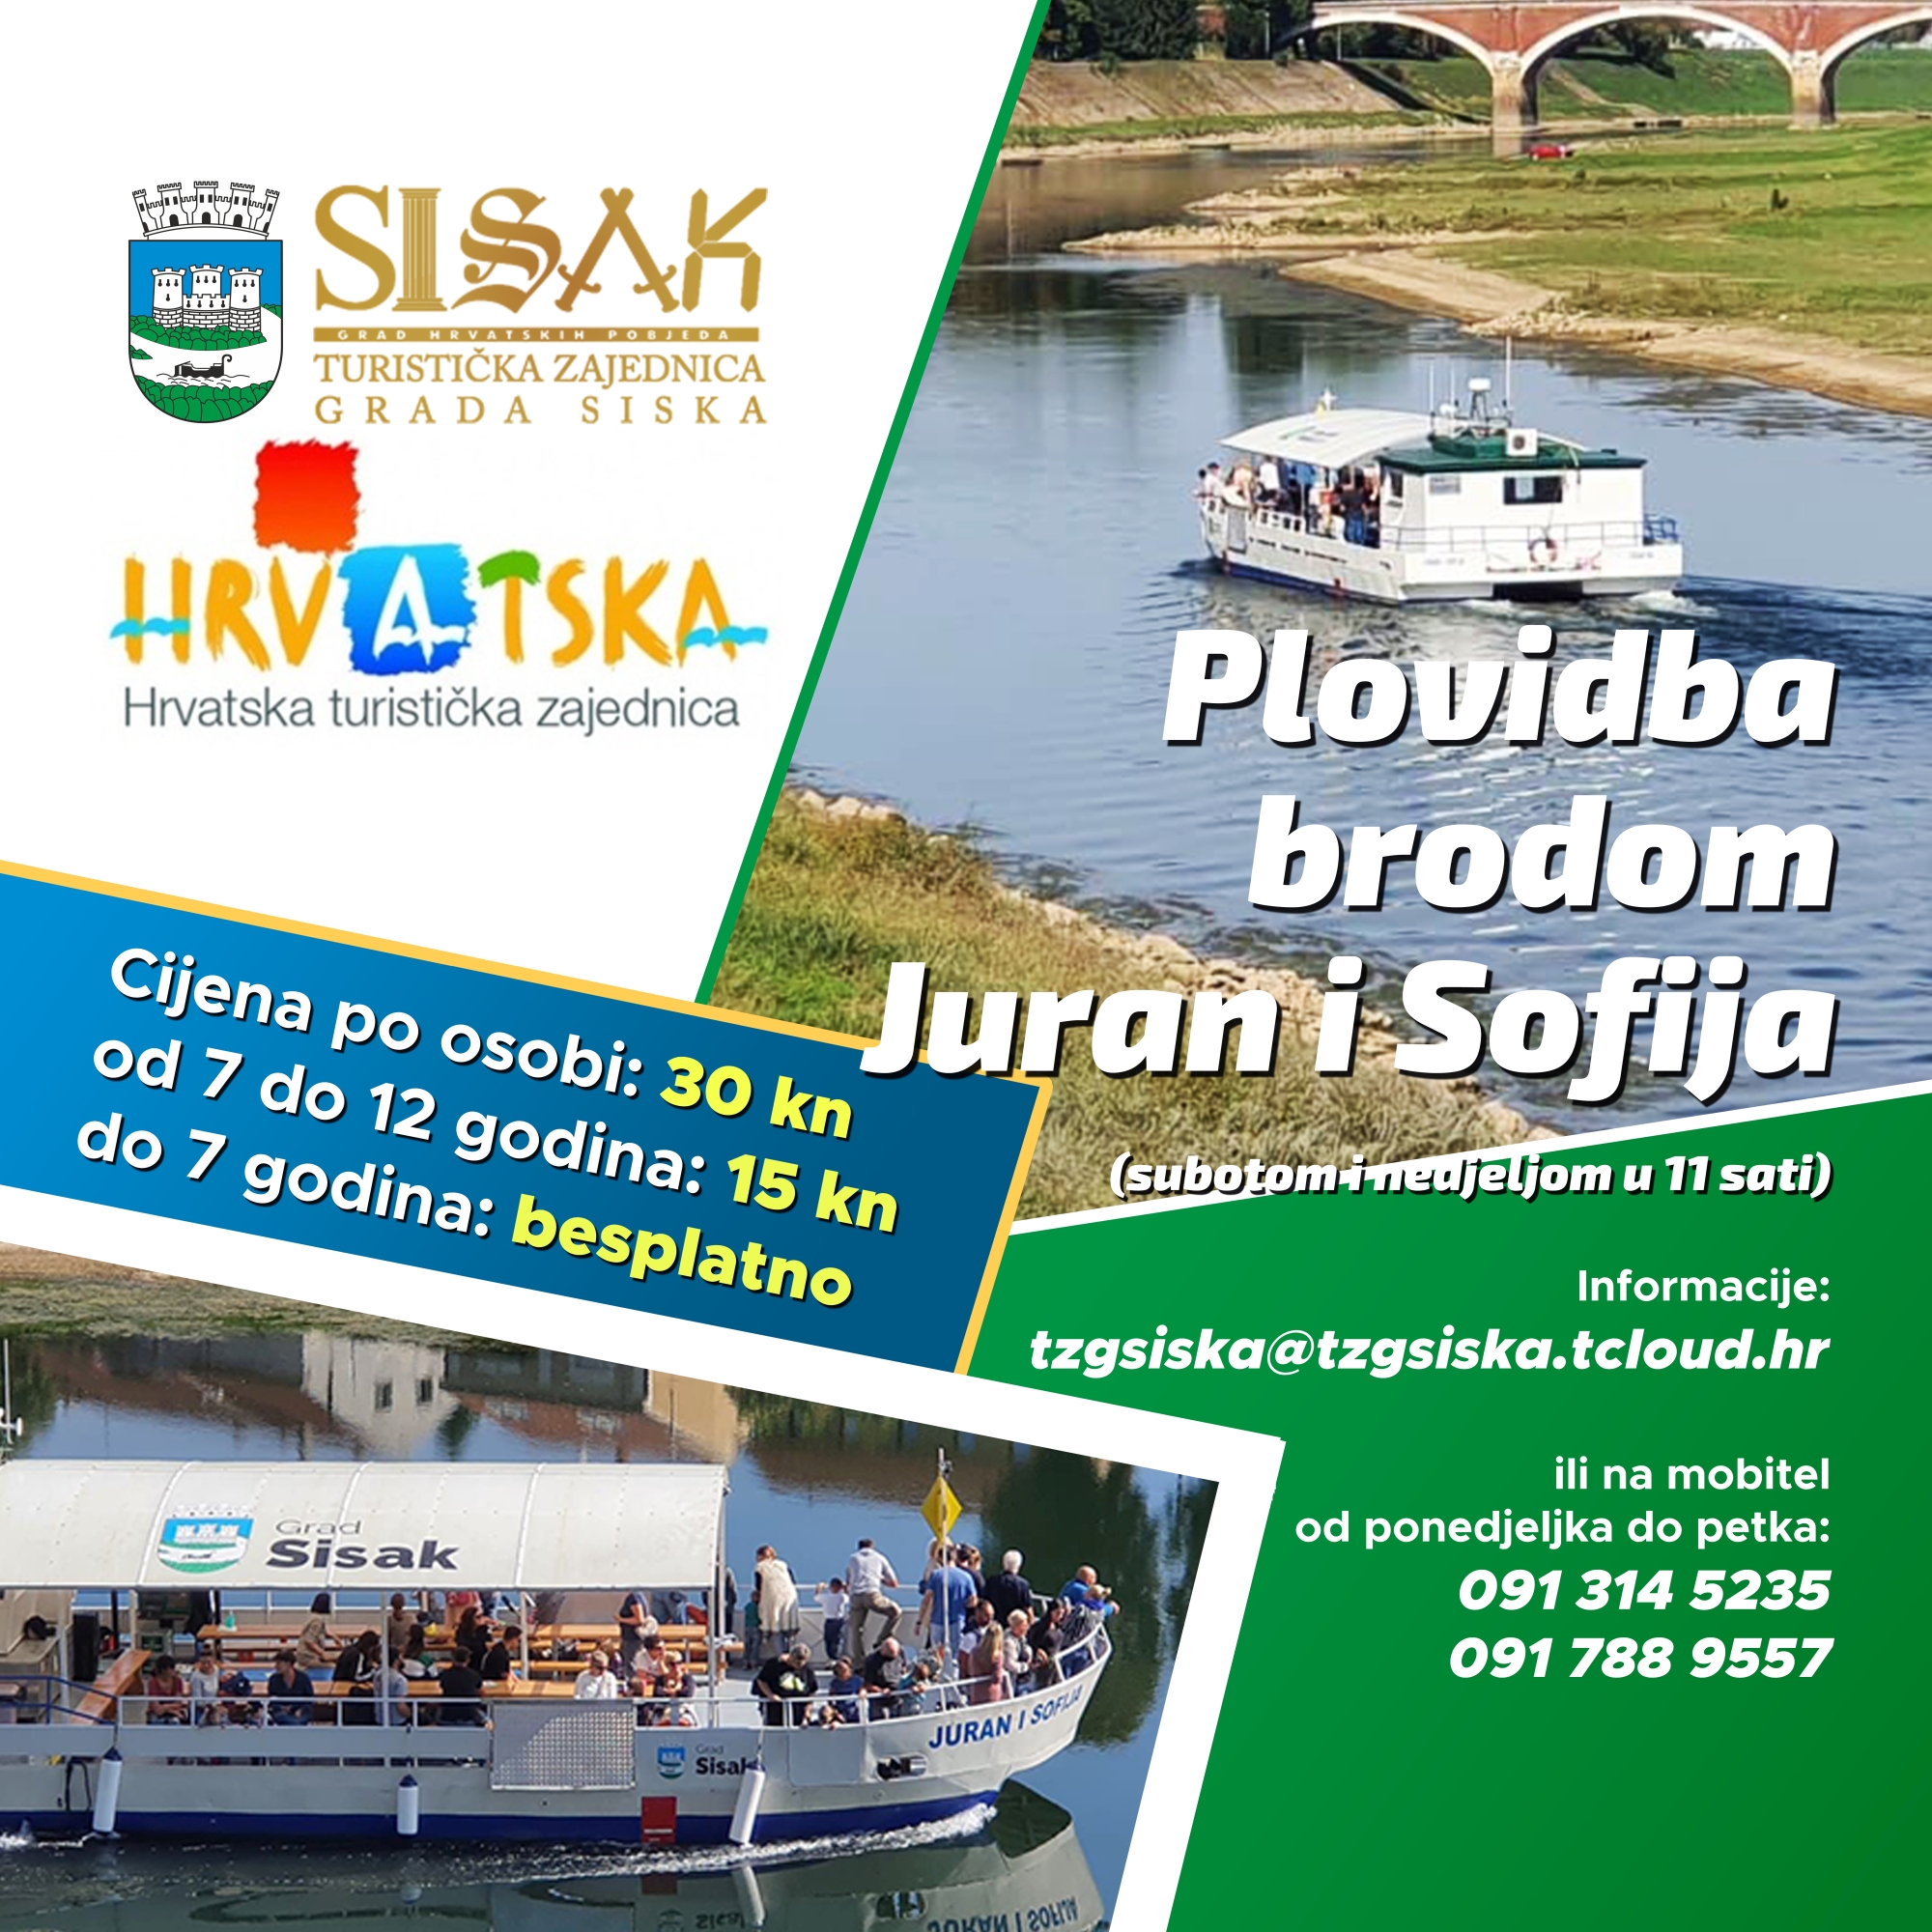 You are currently viewing Vožnja brodom Juran i Sofija u subotu i nedjelju